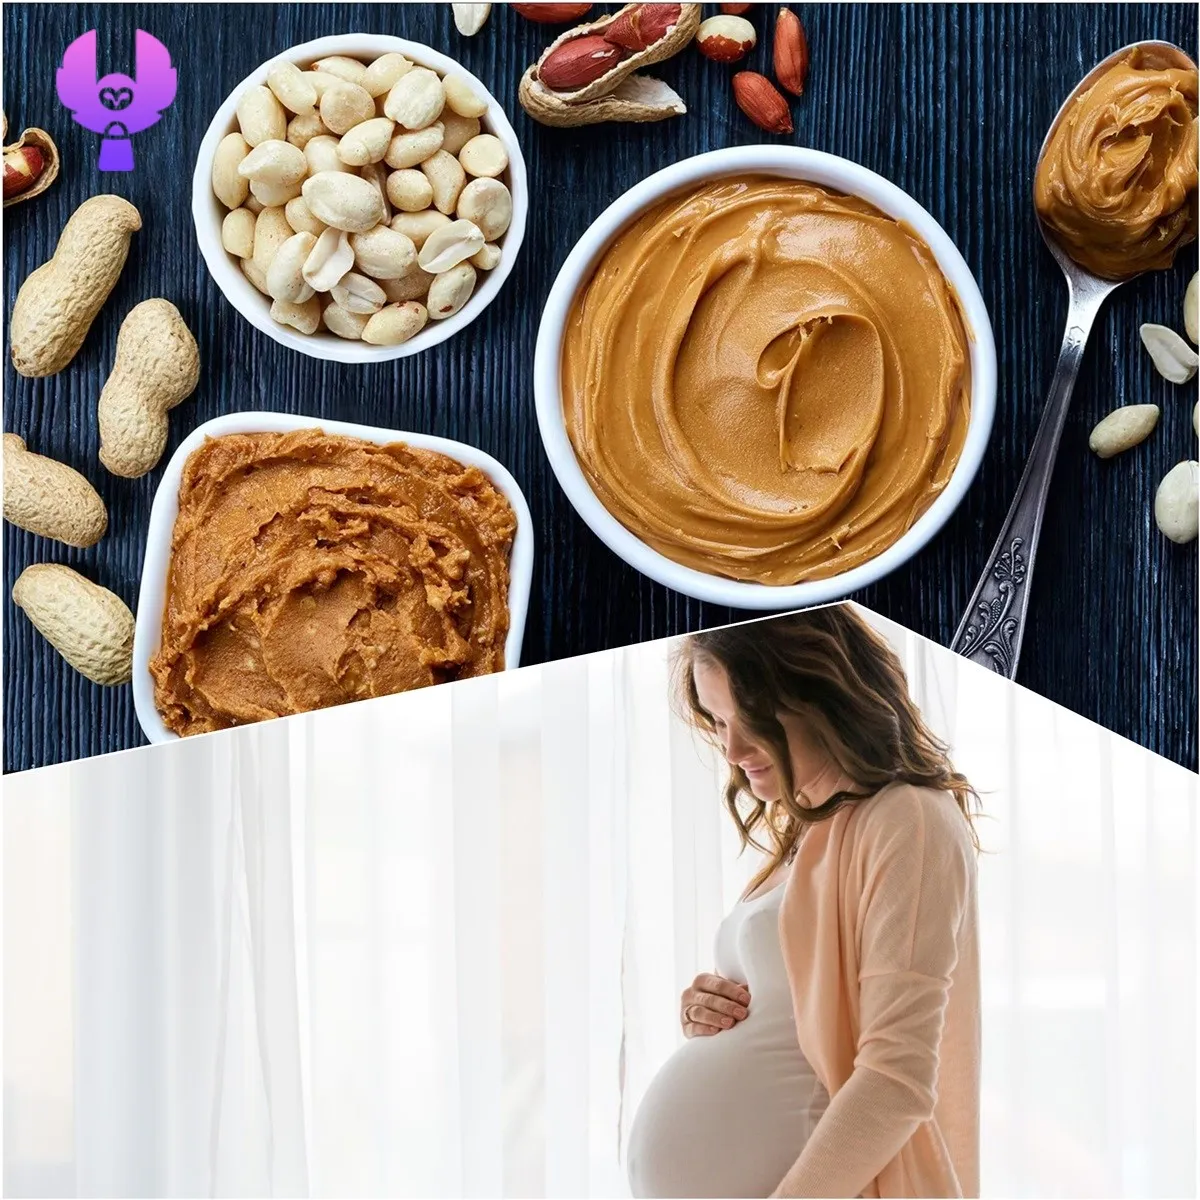 کره بادام زمینی در بارداری - من و بازار